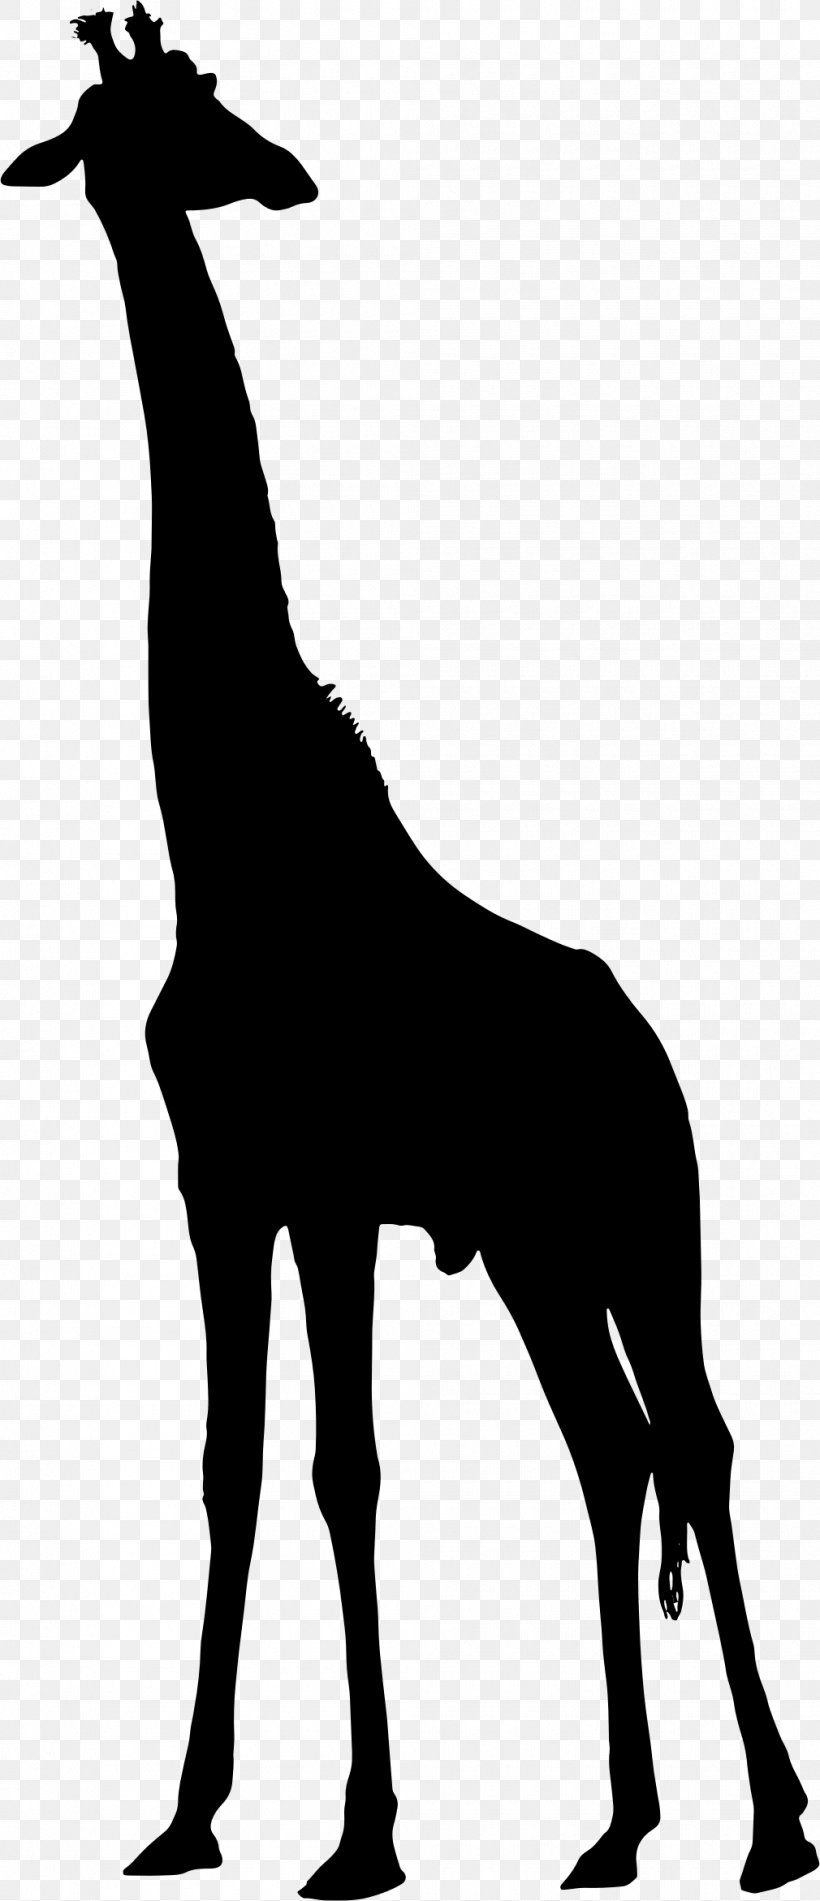 West African Giraffe Silhouette Clip Art, PNG, 1010x2342px, West African Giraffe, Art, Black And White, Fauna, Giraffe Download Free